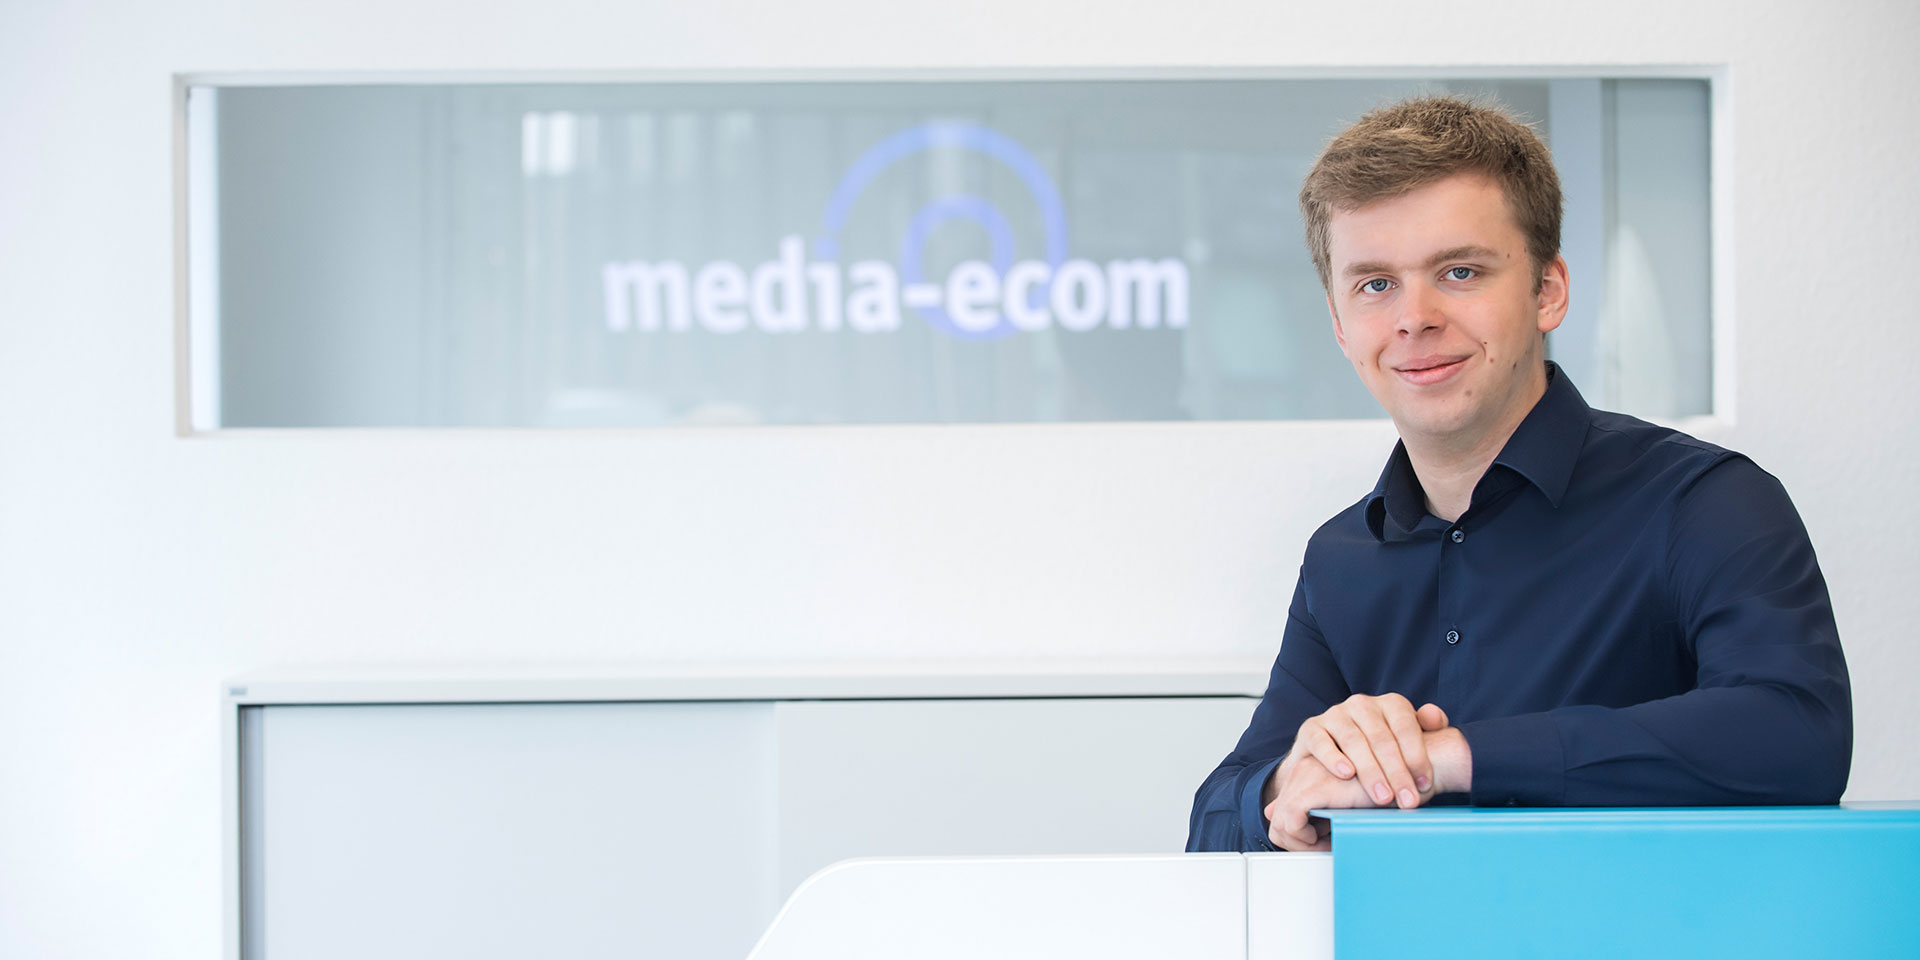 Mitarbeiter der media-ecom GmbH